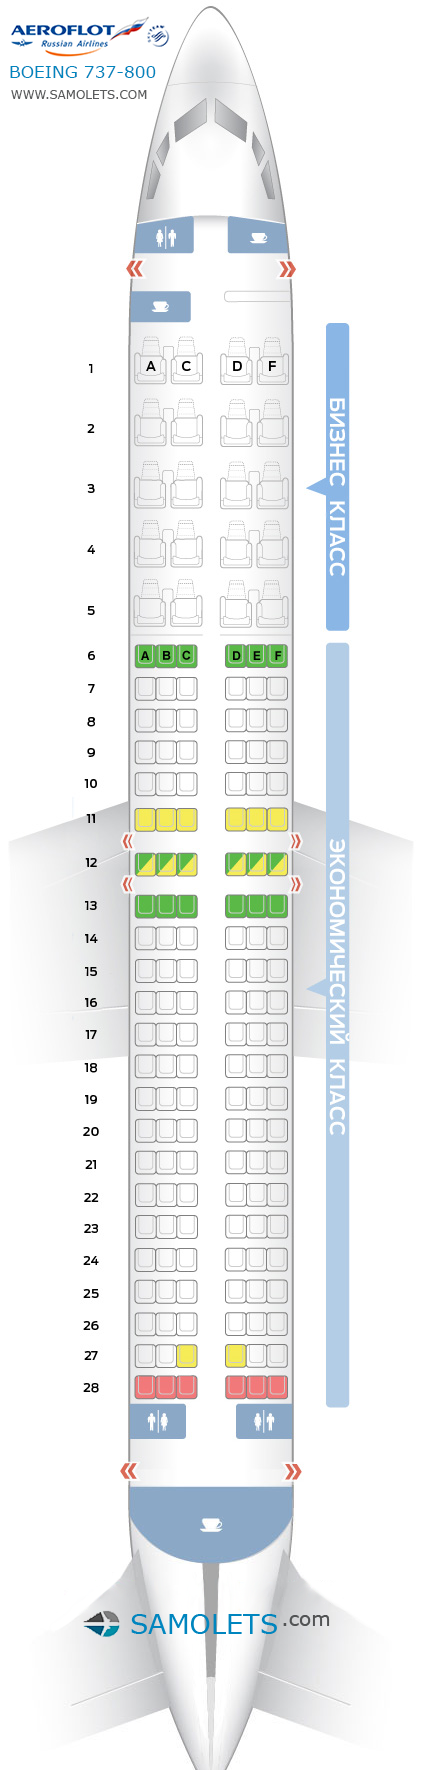 Особенности салона и лучшие места в boeing 737-800 от компании аэрофлот